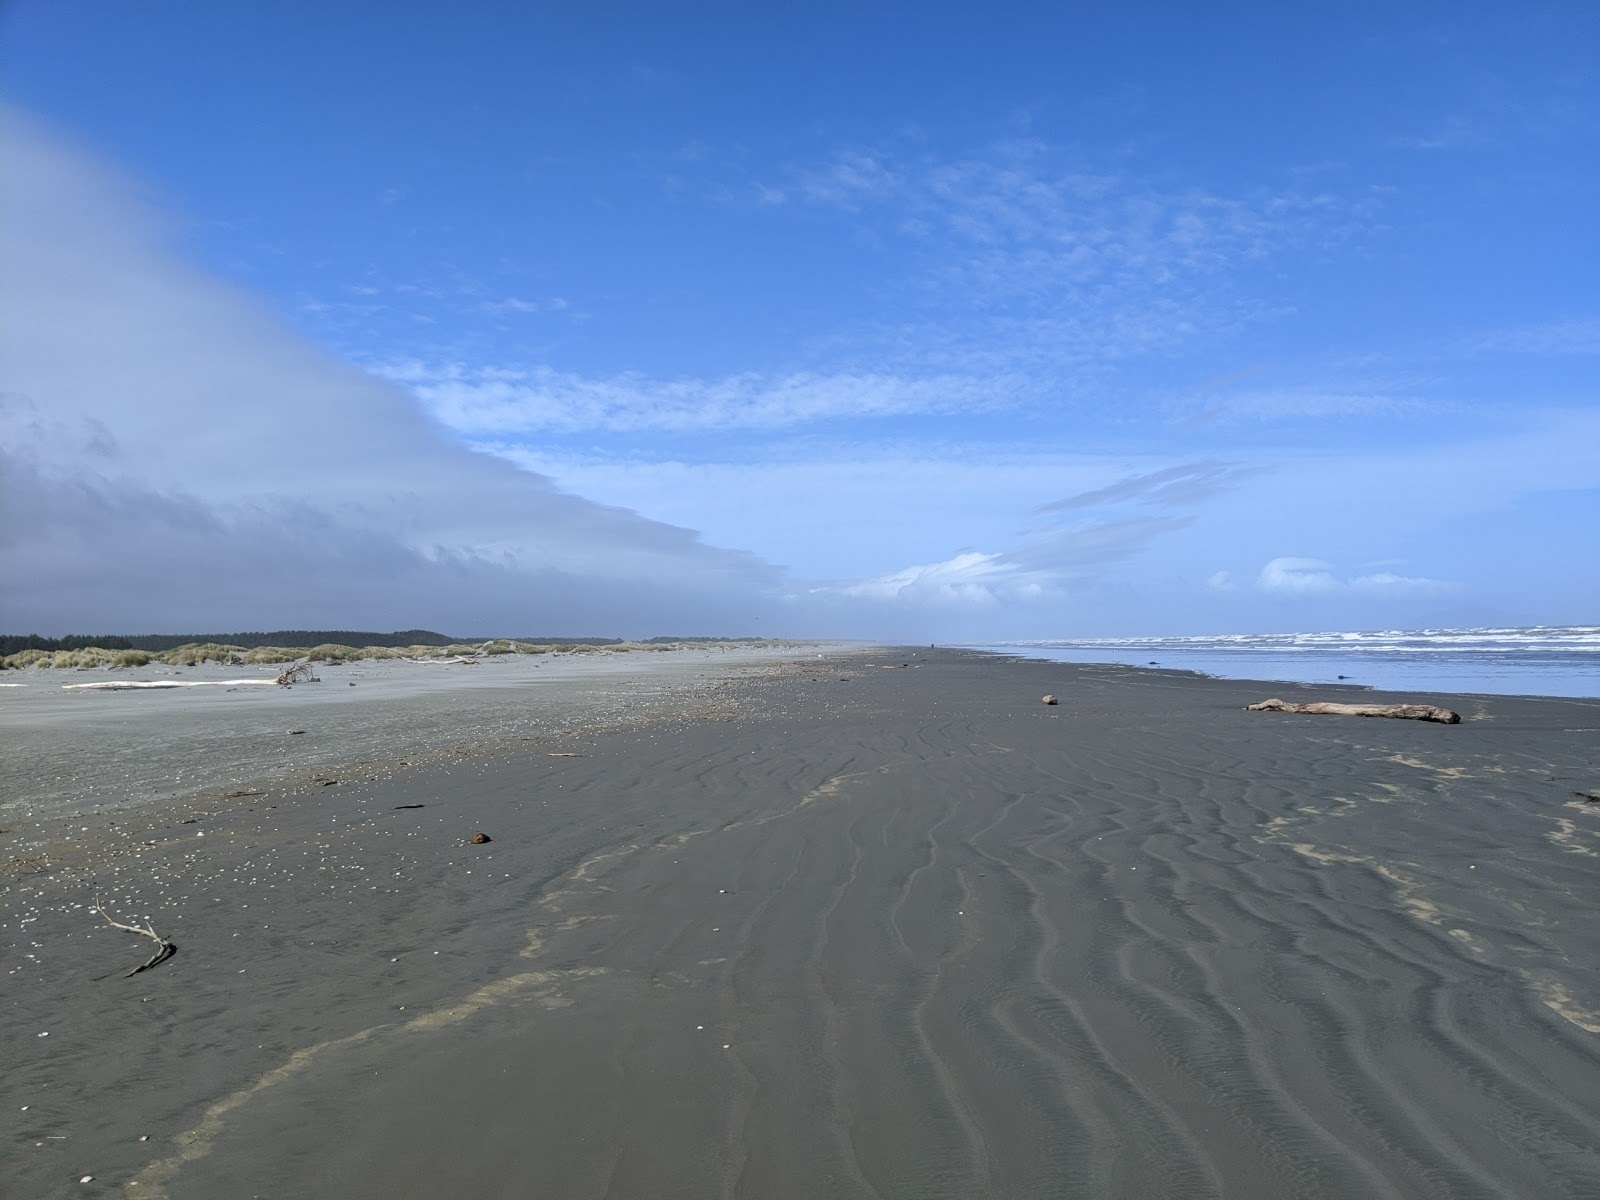 Zdjęcie Waikawa Beach z powierzchnią szary piasek